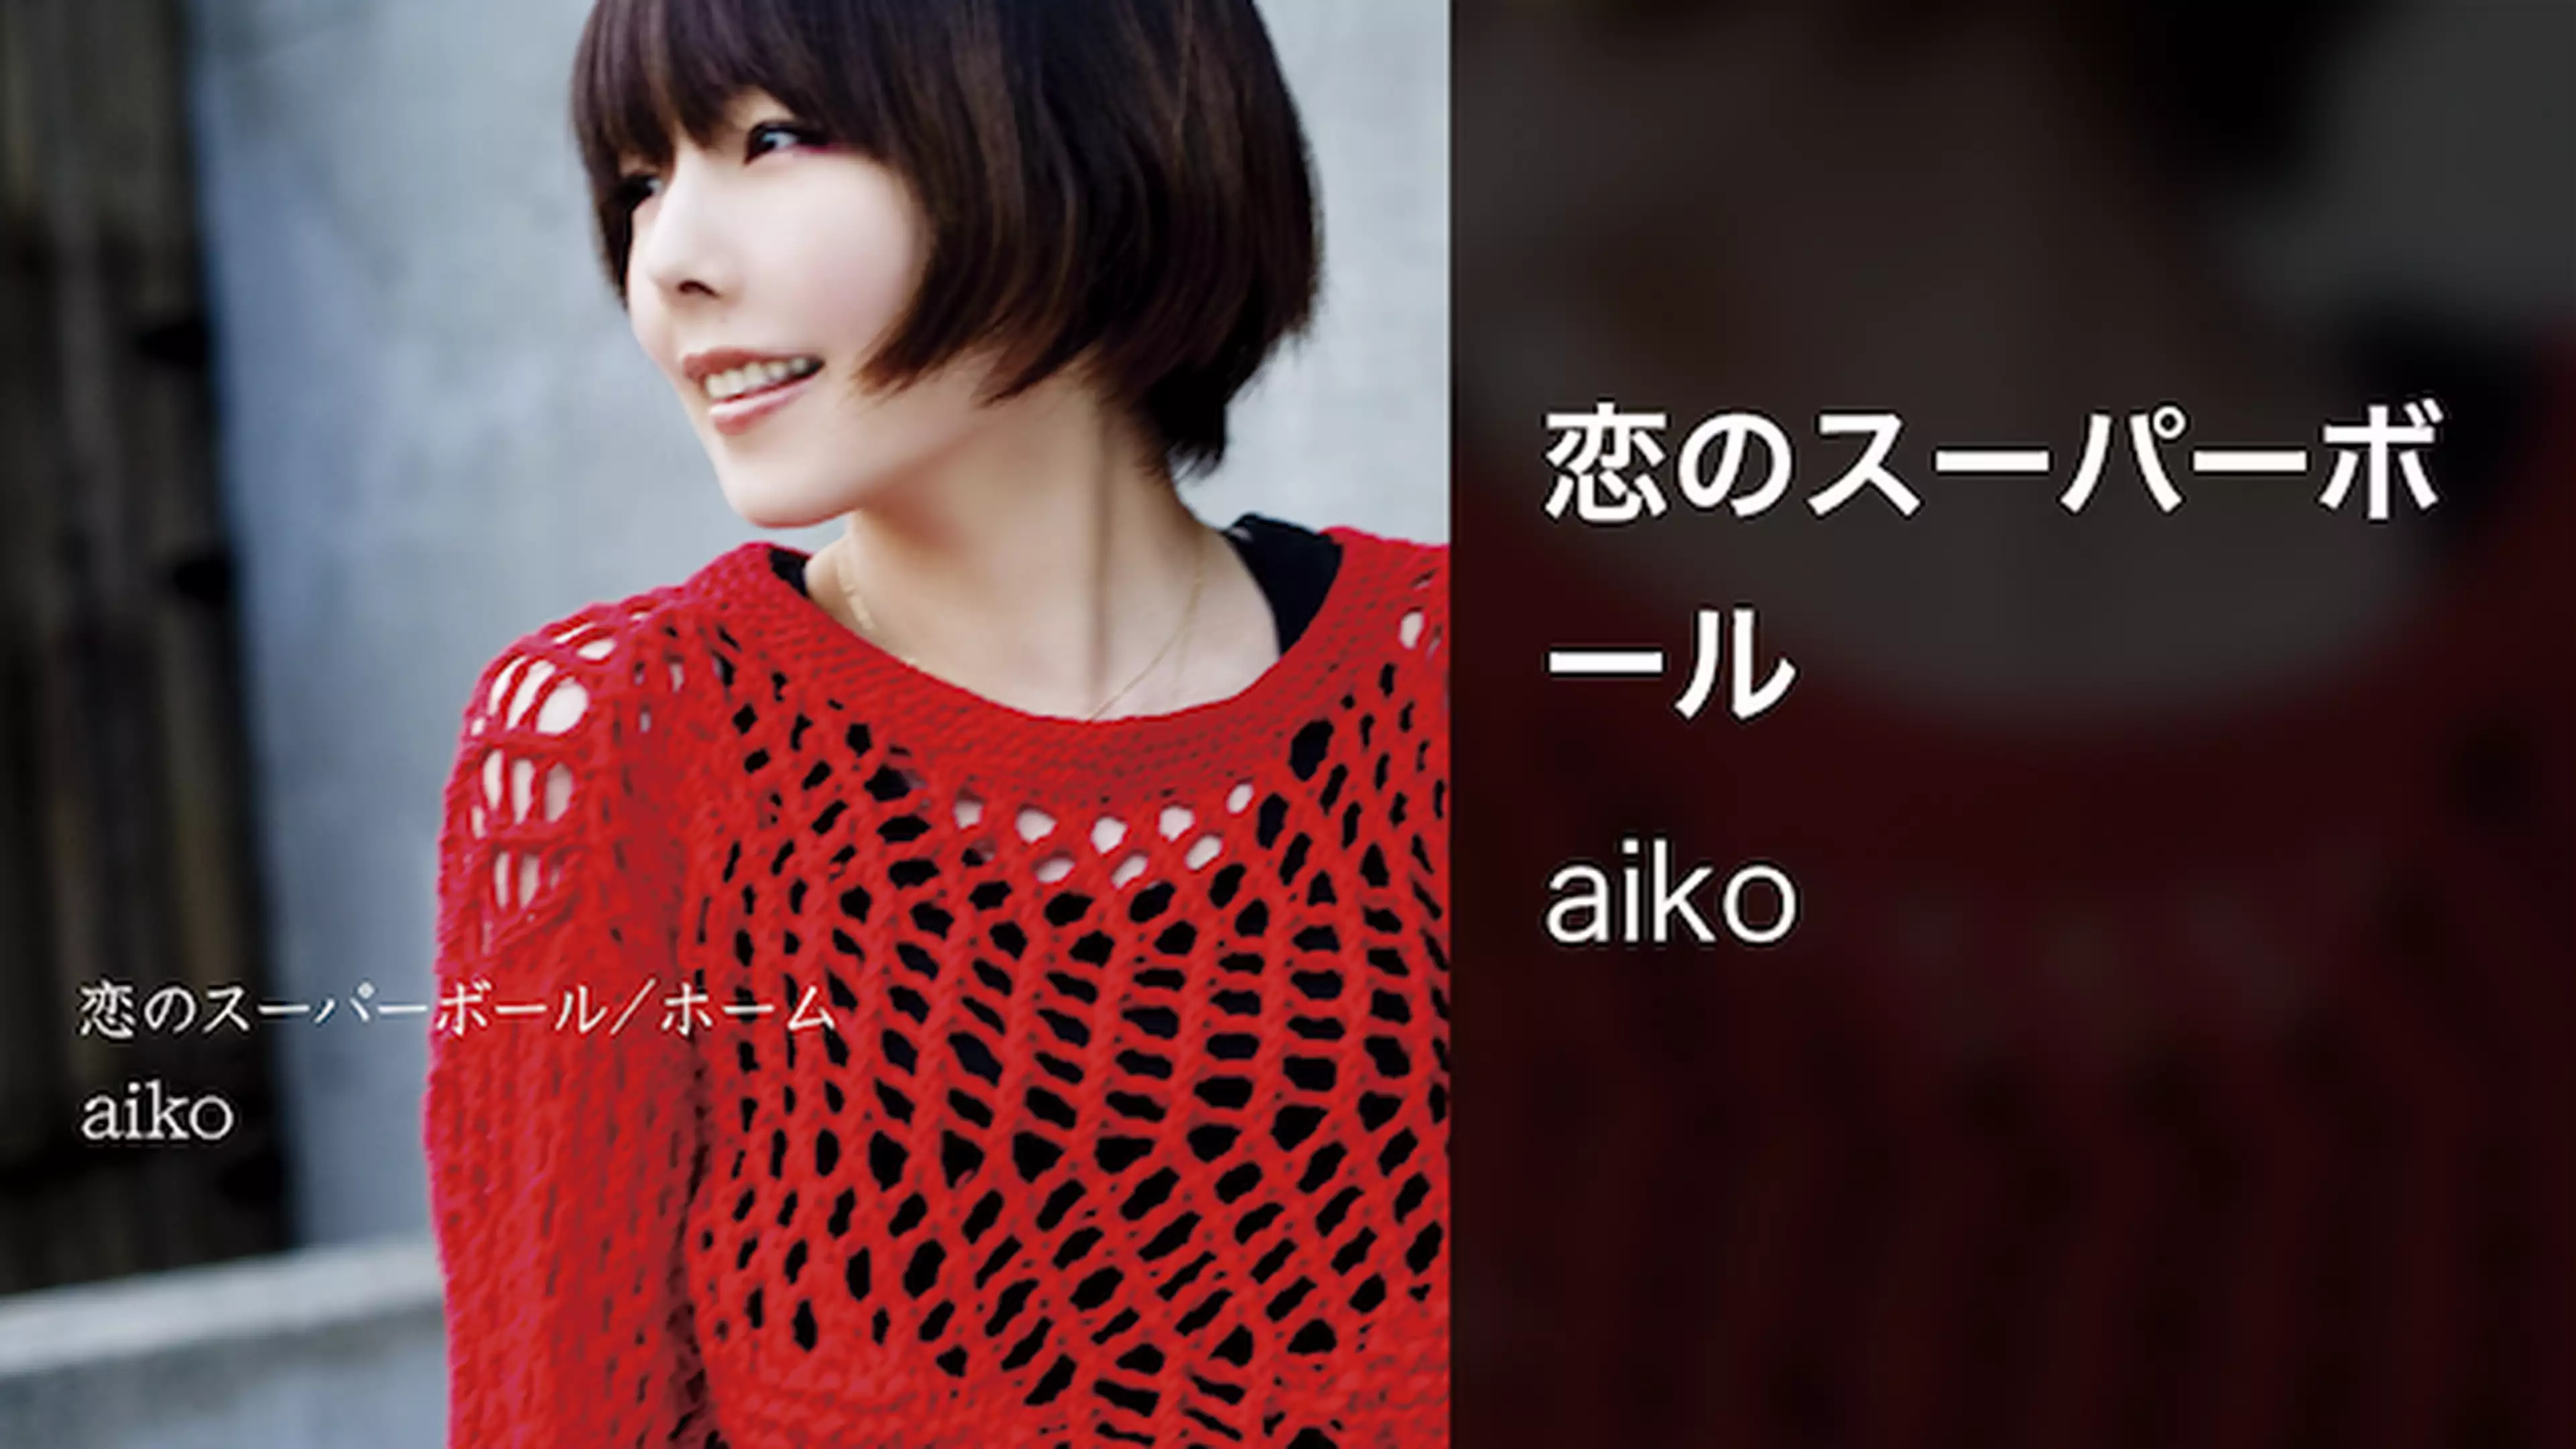 Aiko 愛され続けるシンガーソングライター